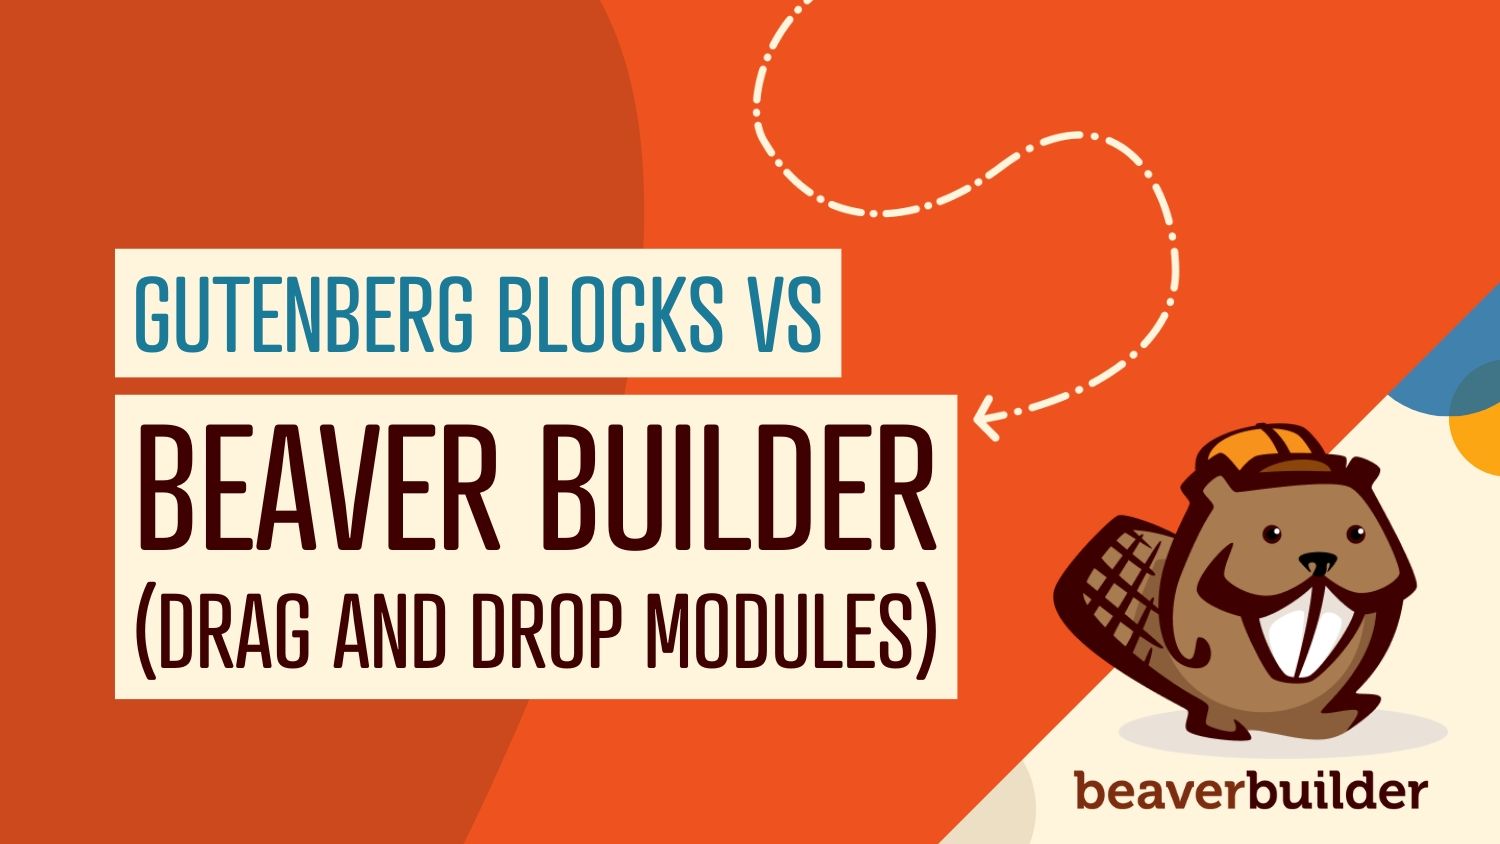 Beaver-Builder-Modules-vs-Gutenberg-Blocks